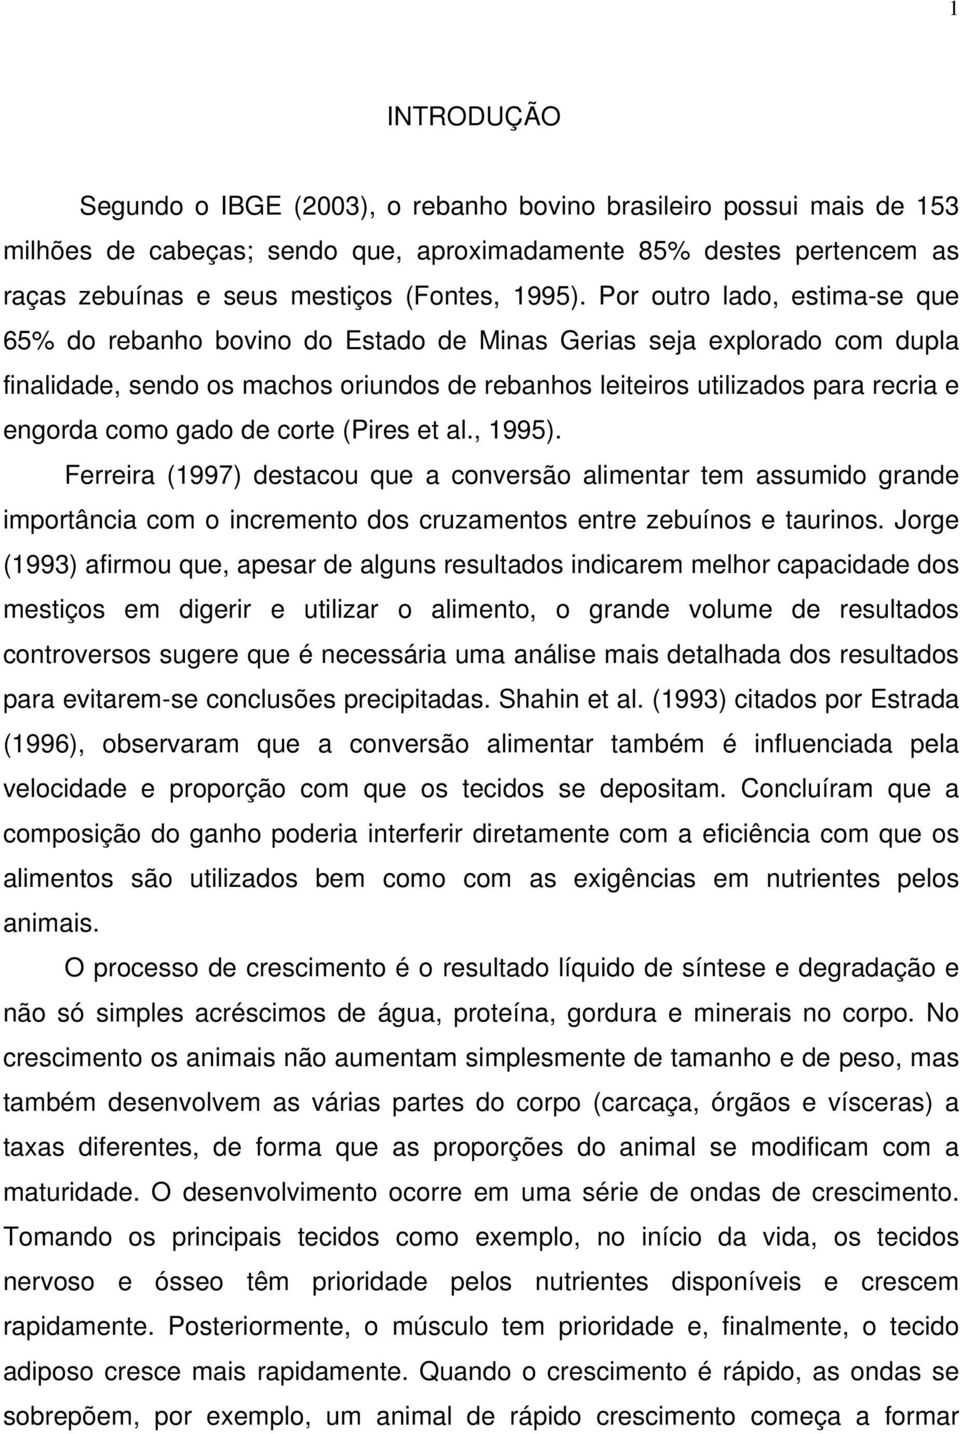 gado de corte (Pires et al., 1995). Ferreira (1997) destacou que a conversão alimentar tem assumido grande importância com o incremento dos cruzamentos entre zebuínos e taurinos.